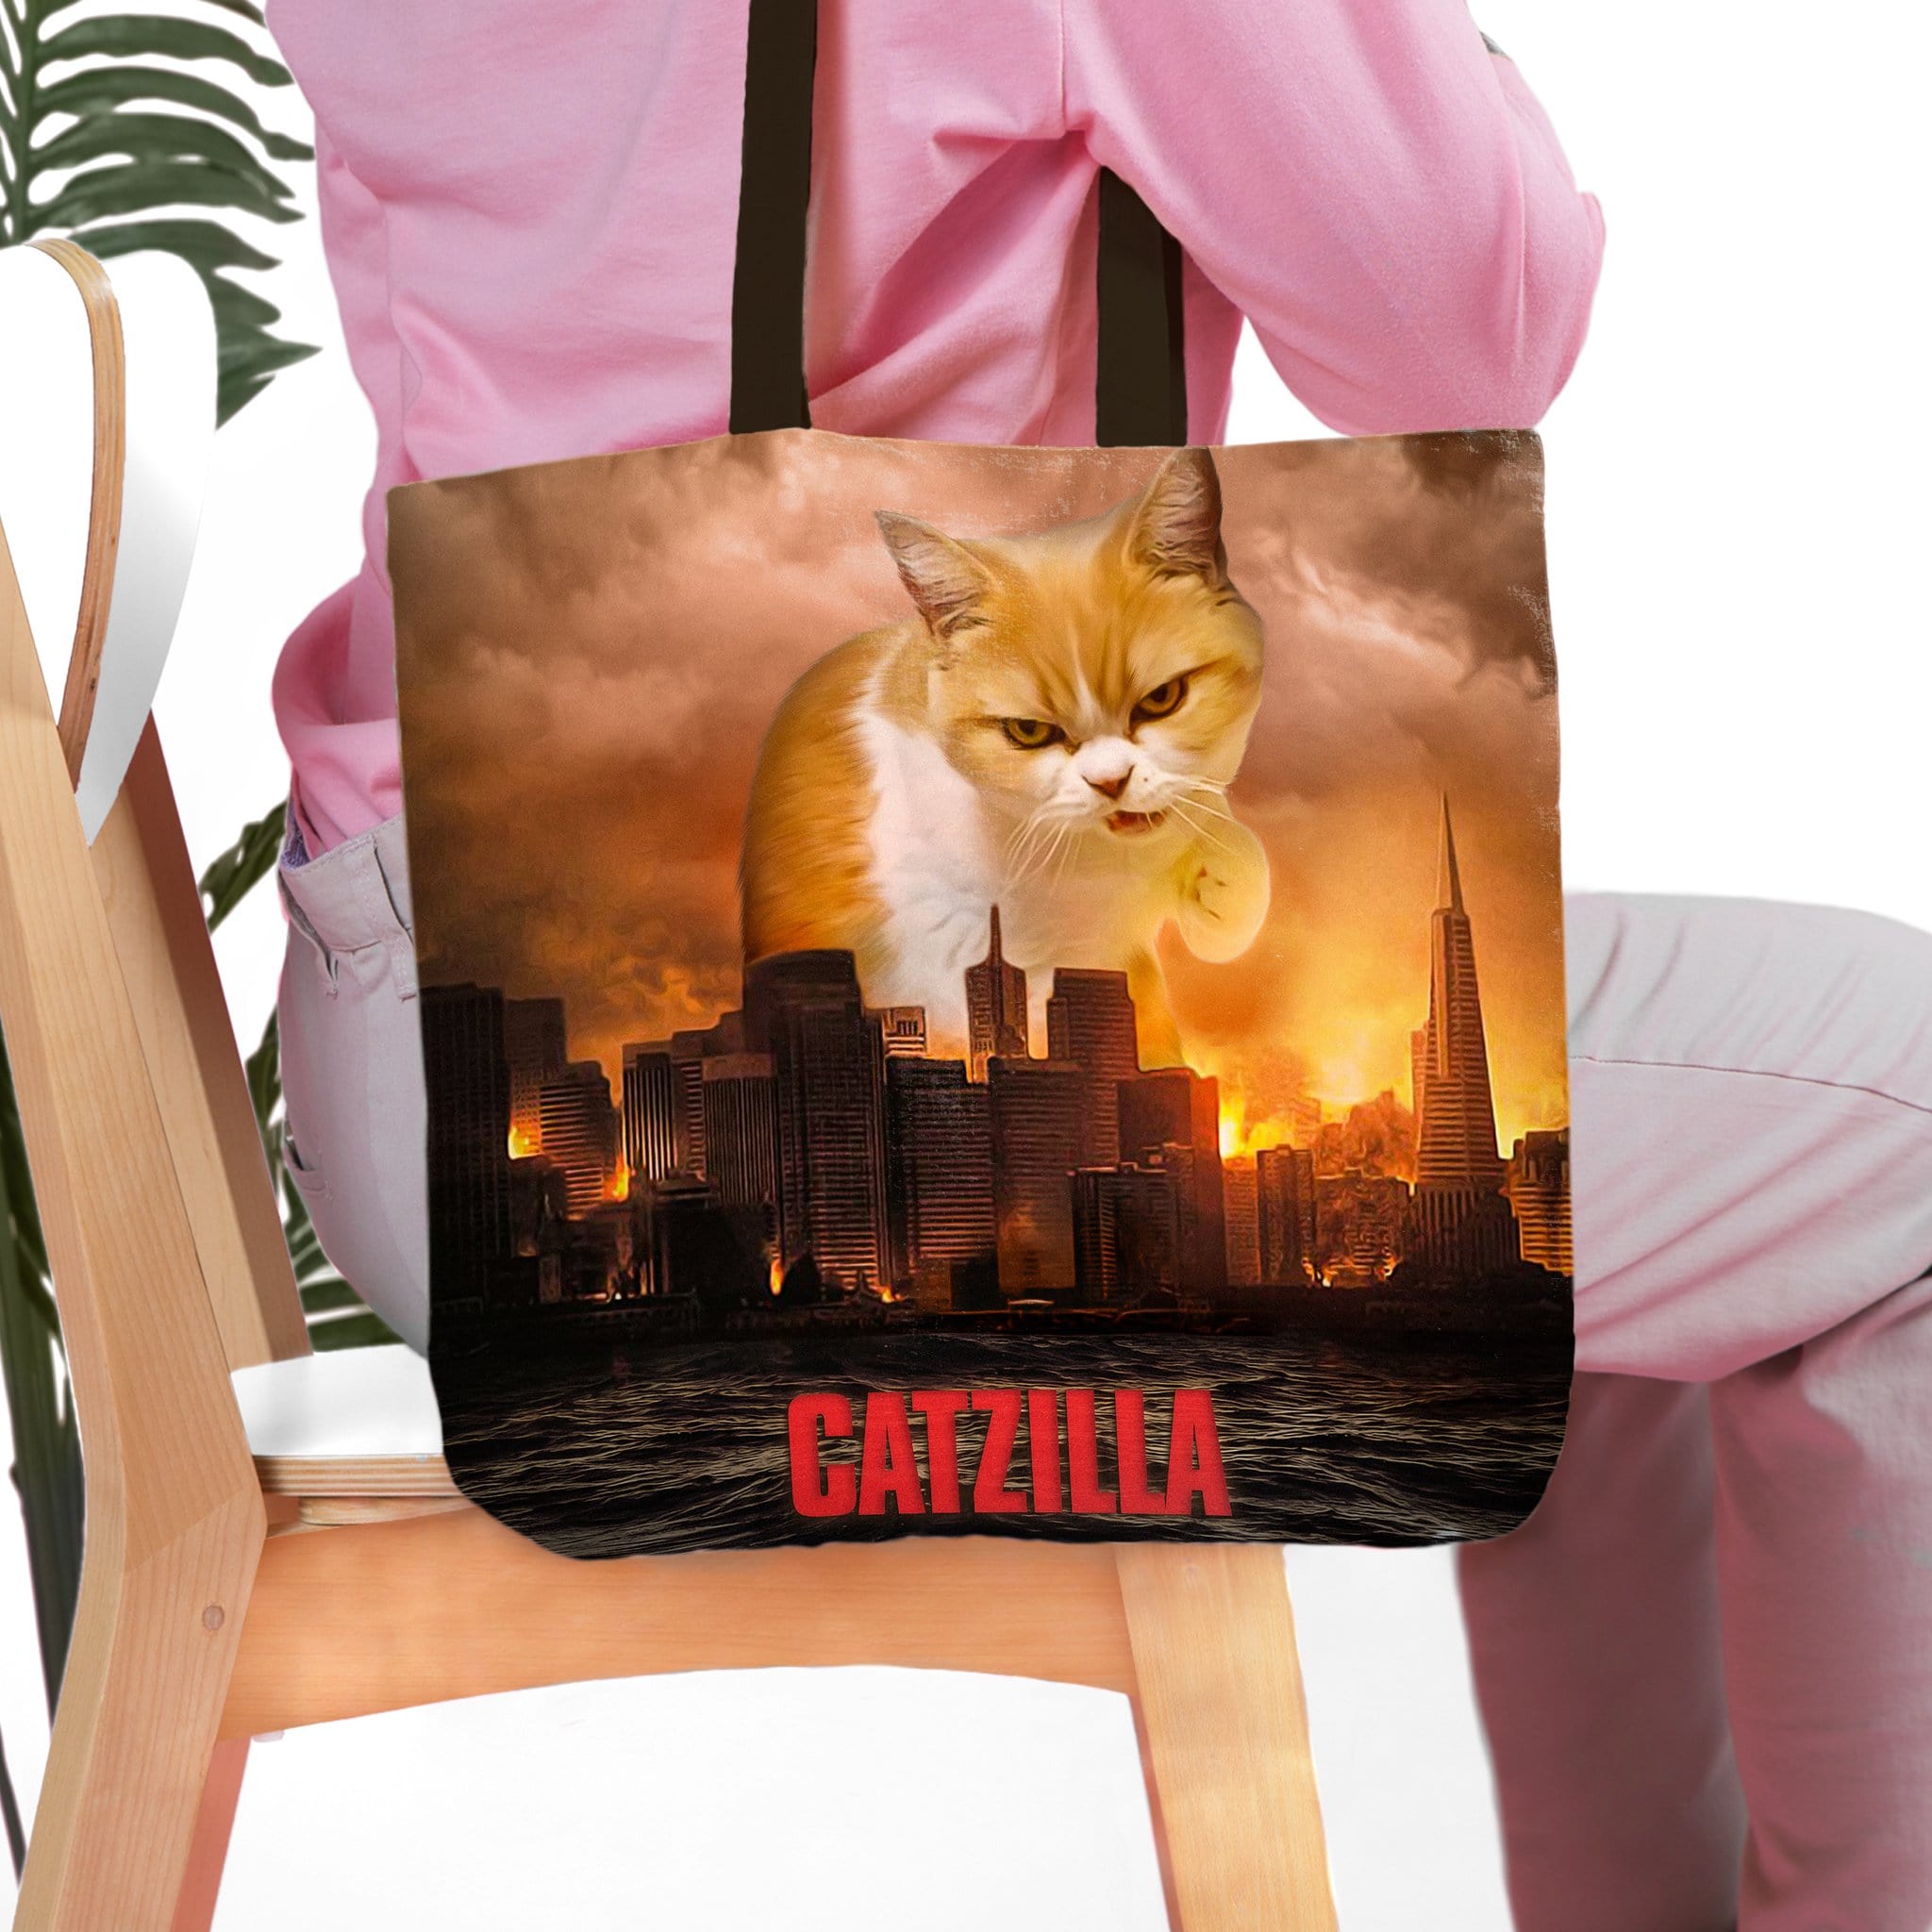 &#39;Catzilla&#39; Personalized Tote Bag